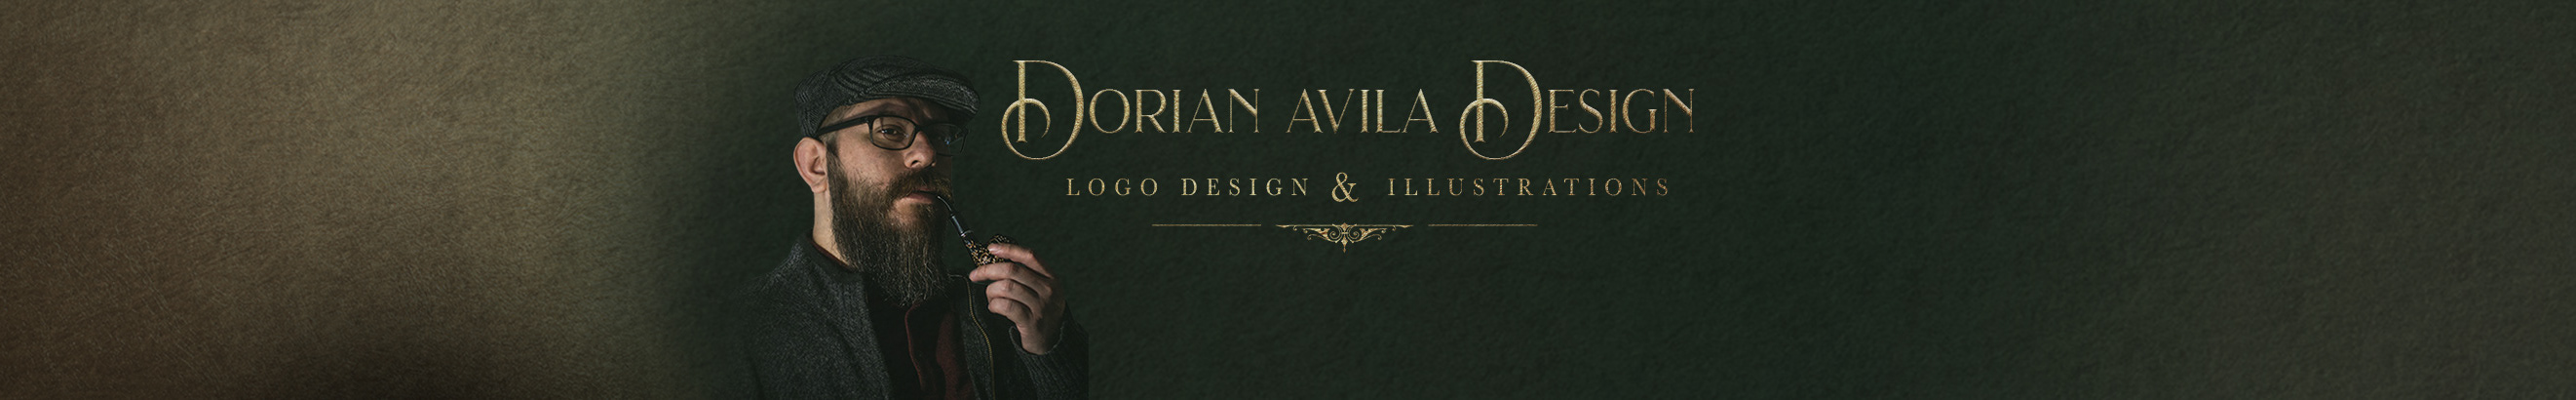 Banner de perfil de Dorian Avila